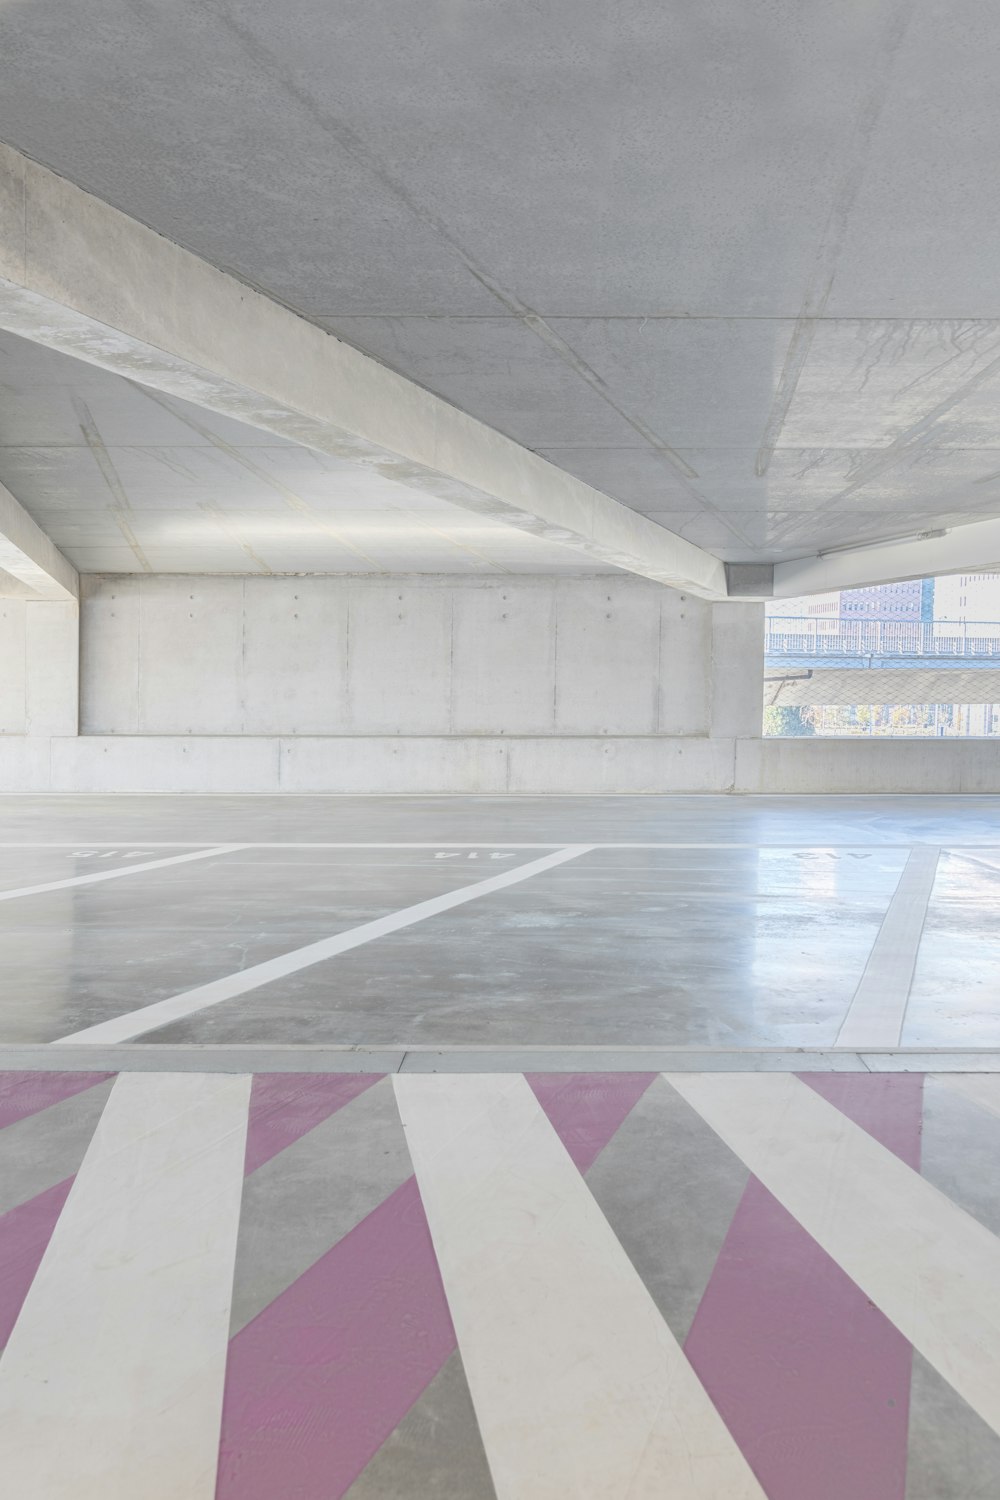 Un estacionamiento vacío con rayas rosas y blancas